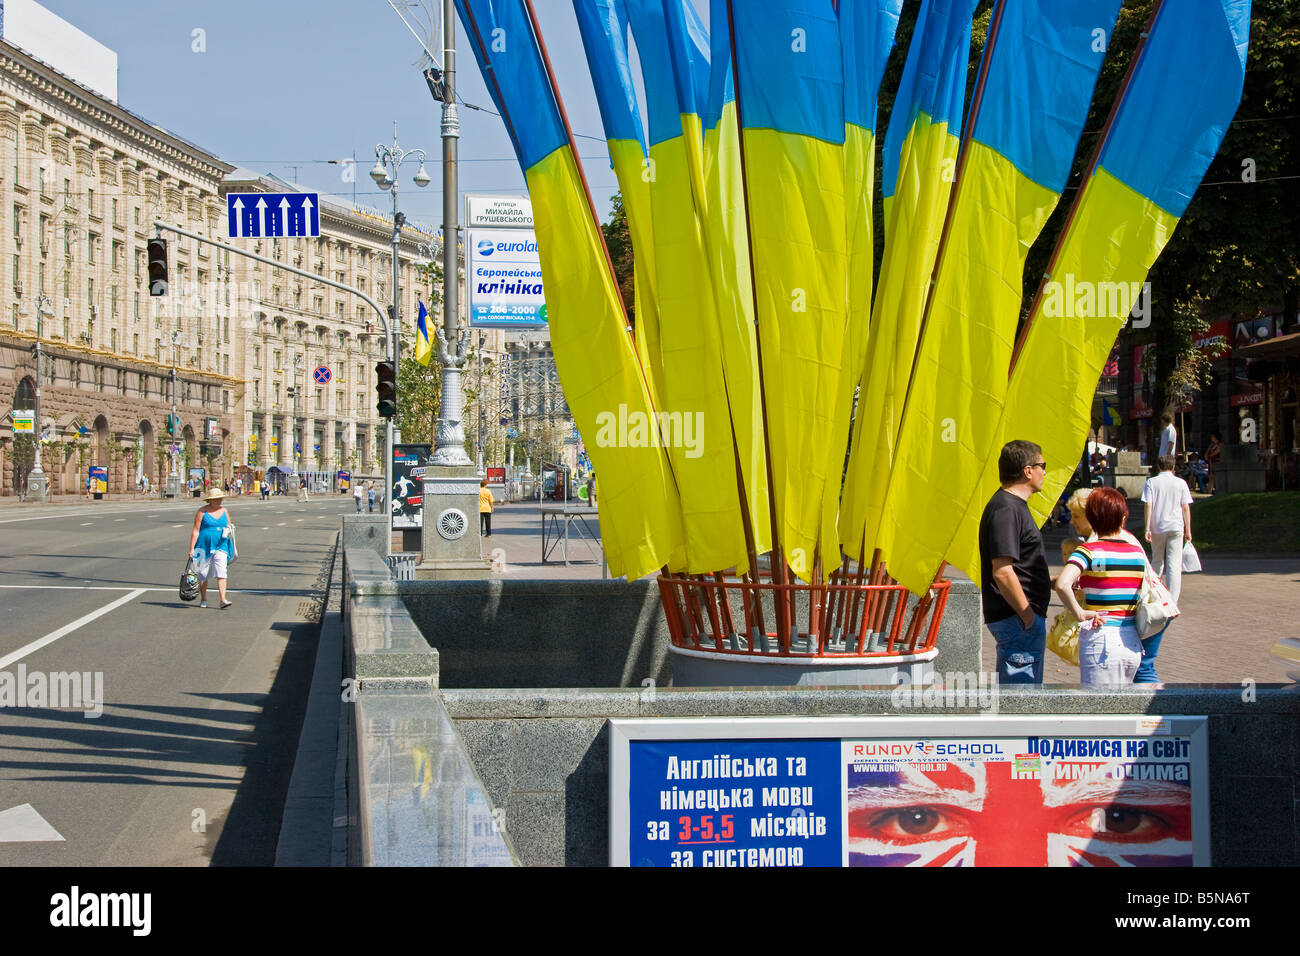 Independence day, Ukrainian national flags flying in Maidan Nezalezhnosti (Independence Square), Kiev, Ukraine Stock Photo